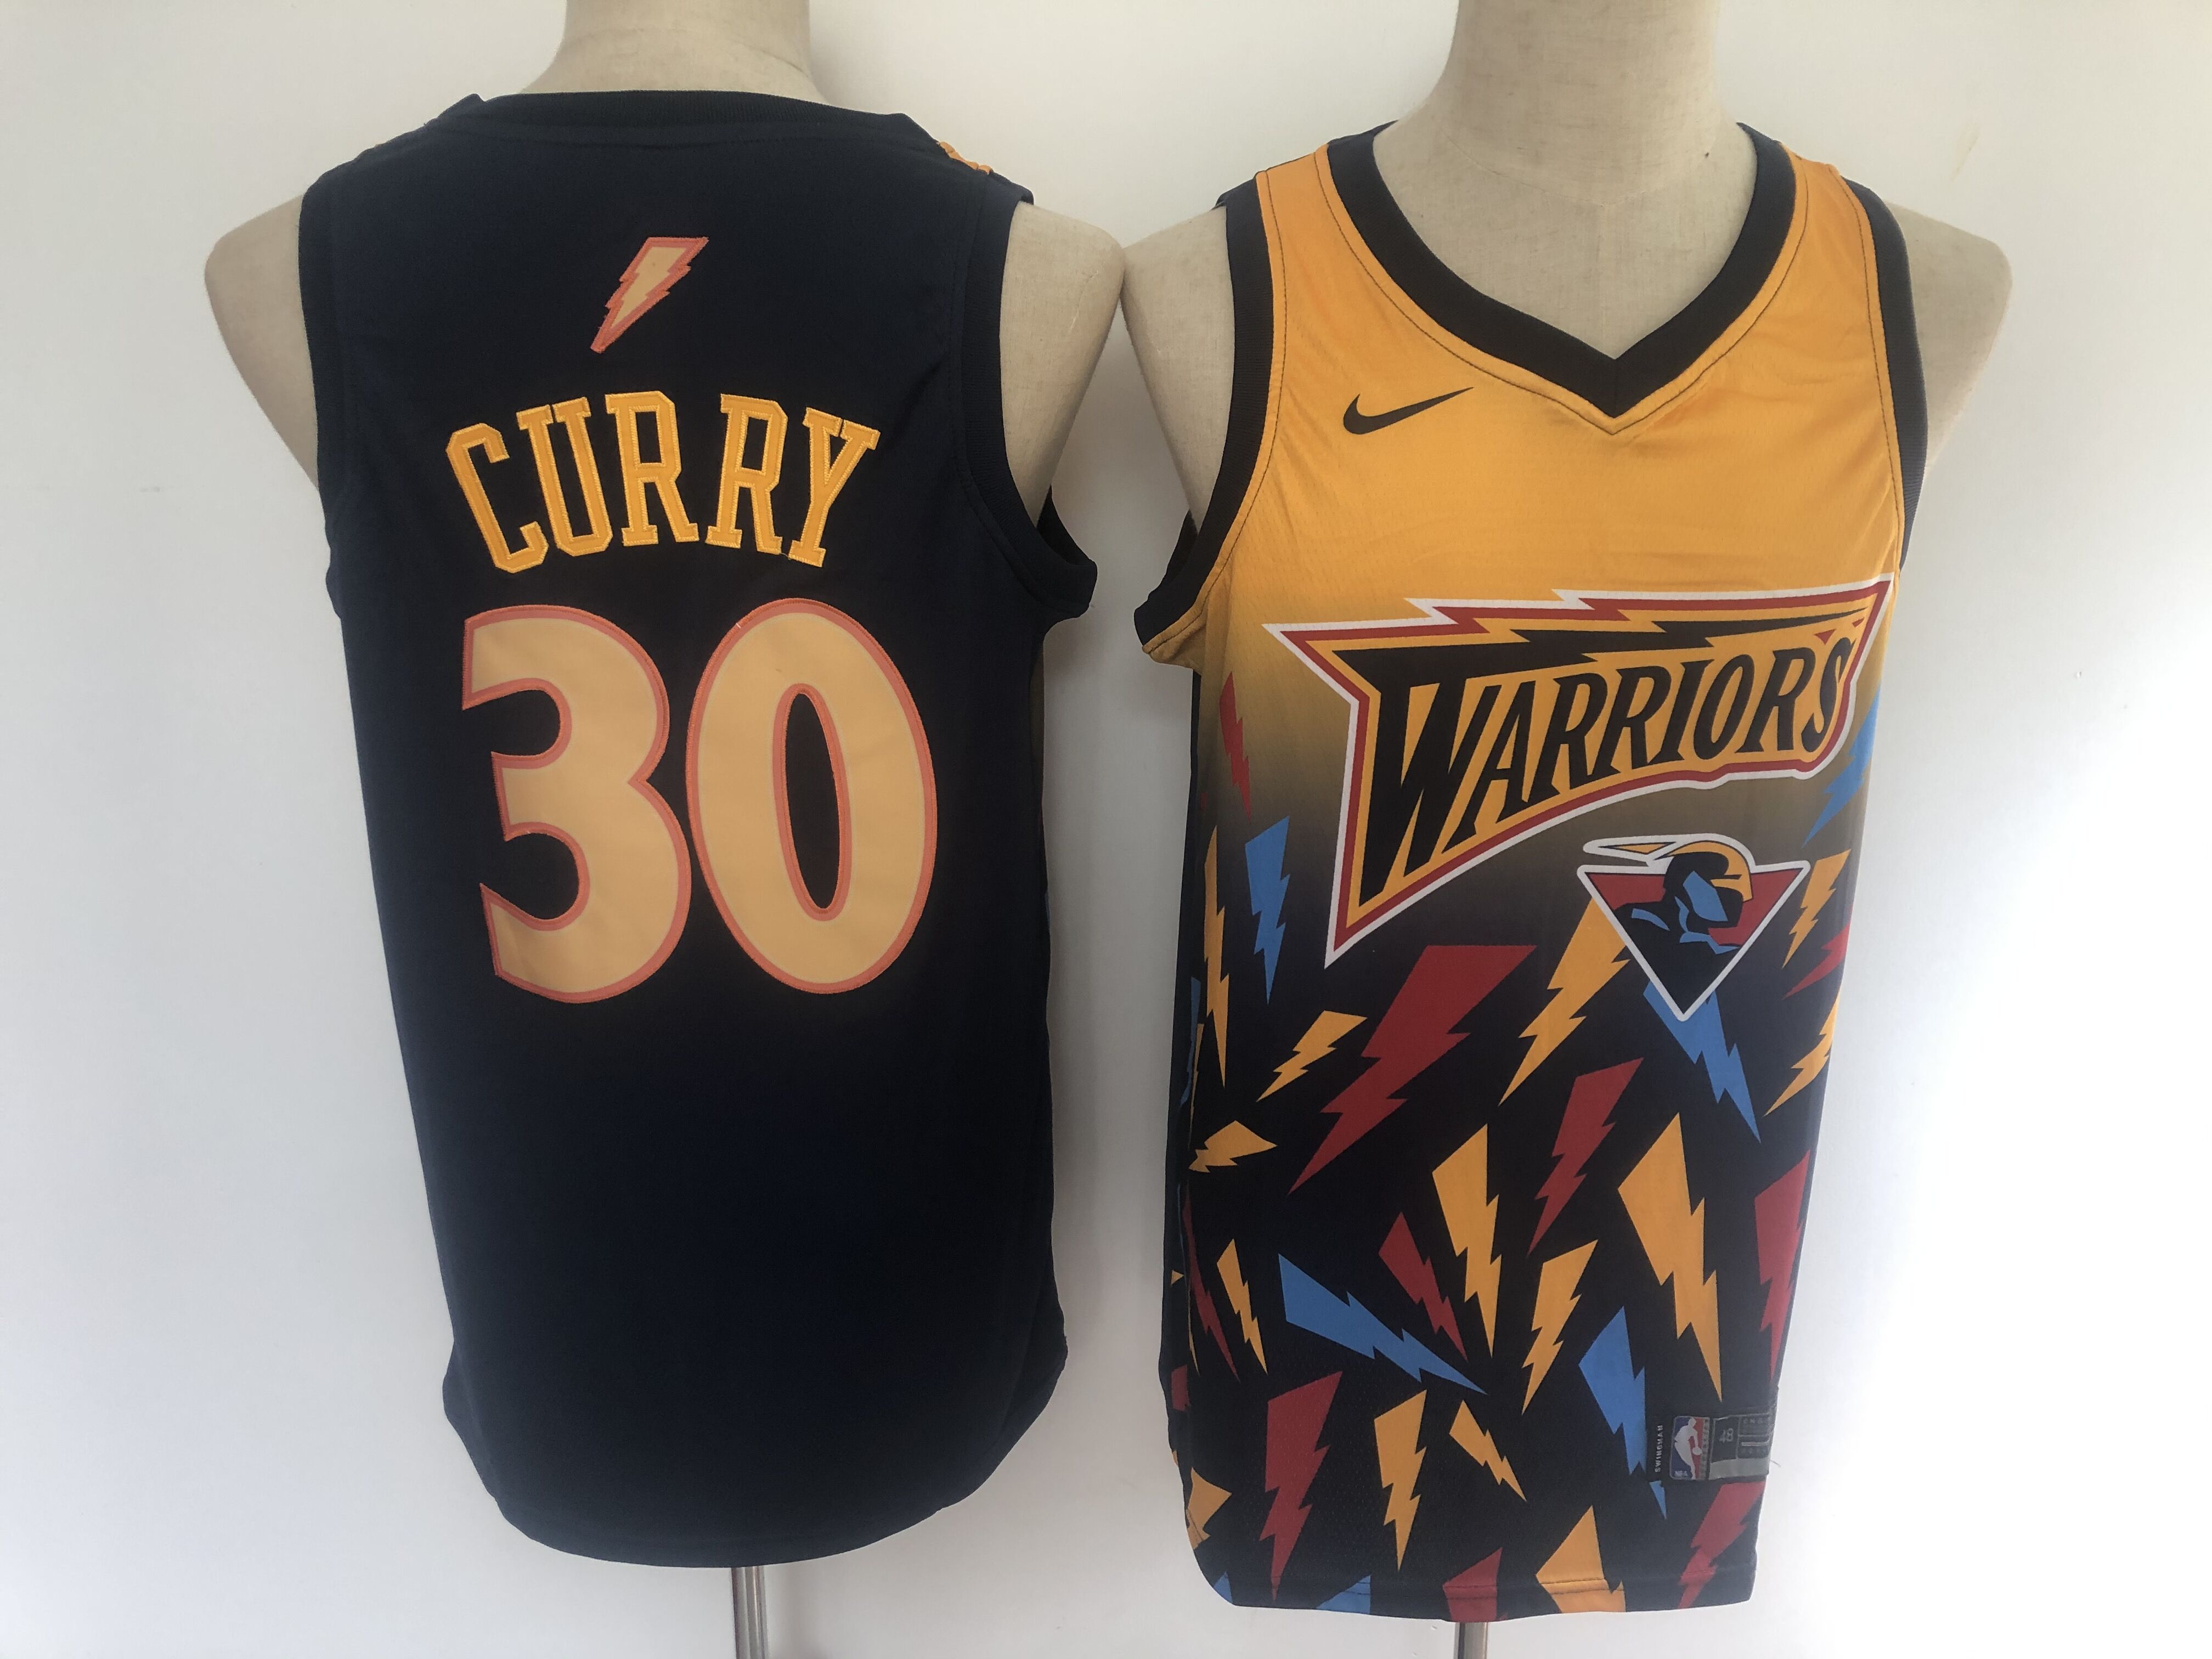 2020 NBA Golden State Warriors #30 Curry black Jerseys 3->golden state warriors->NBA Jersey